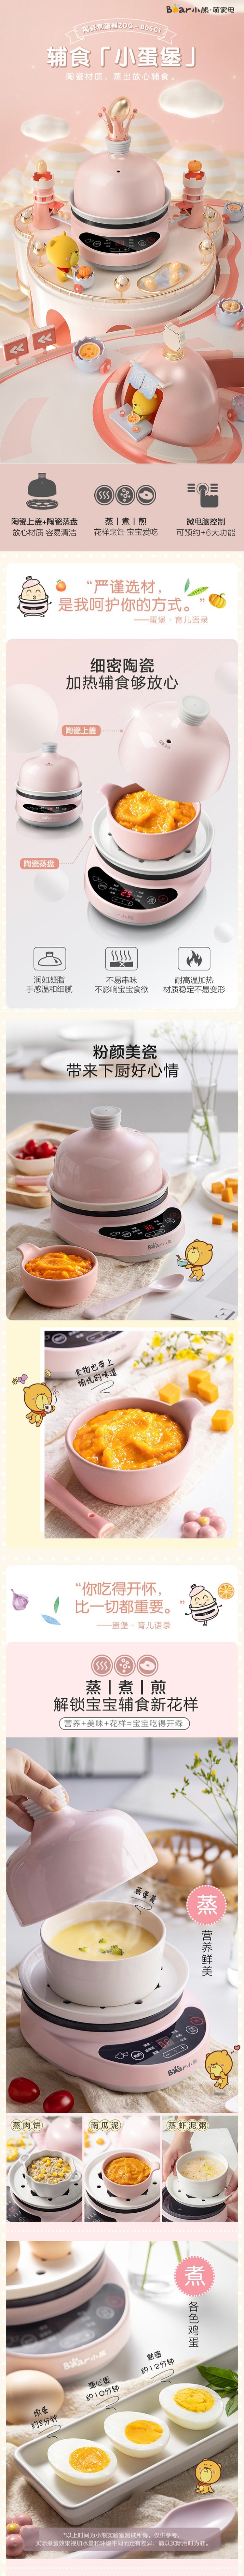 【美国本土发货】Bear小熊 多功能煮蛋器早餐机煎蛋机 陶瓷材质 预约定时 粉色